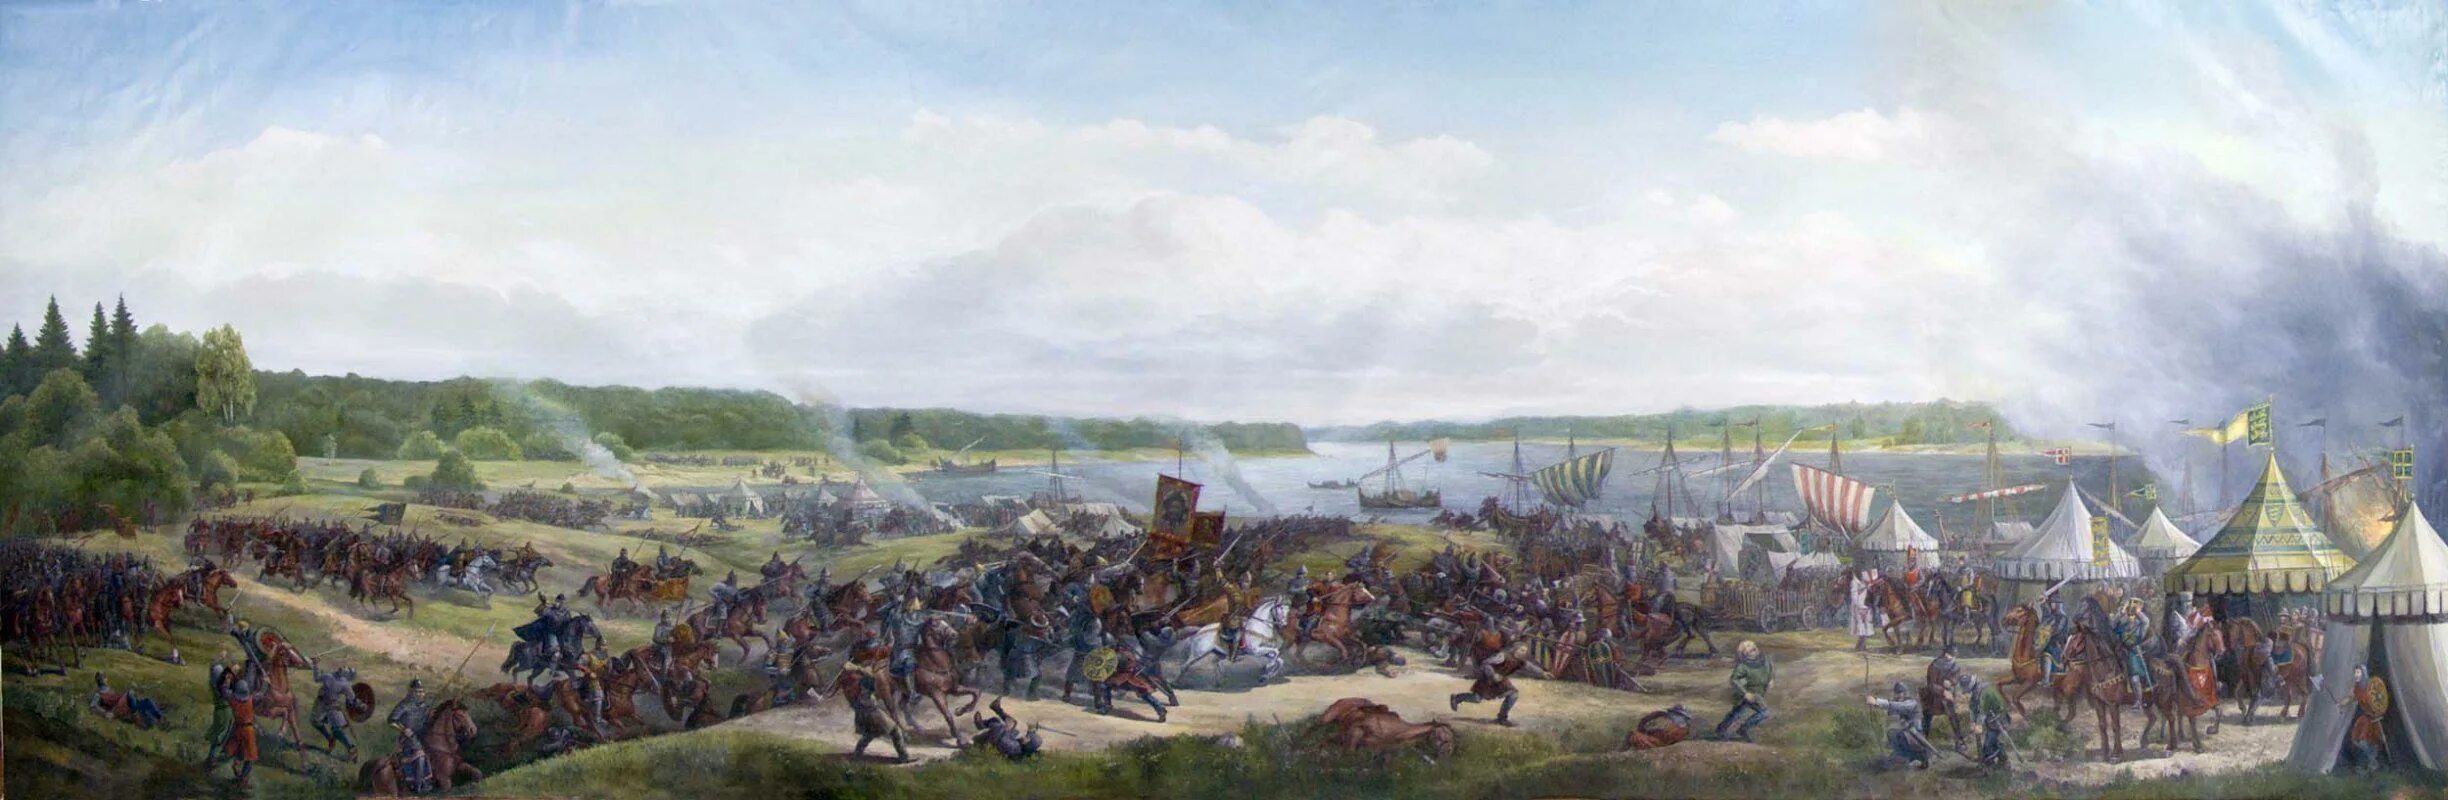 Войско шведского короля высадилось в устье невы. Невская битва 1240. Битва на Неве 1240.